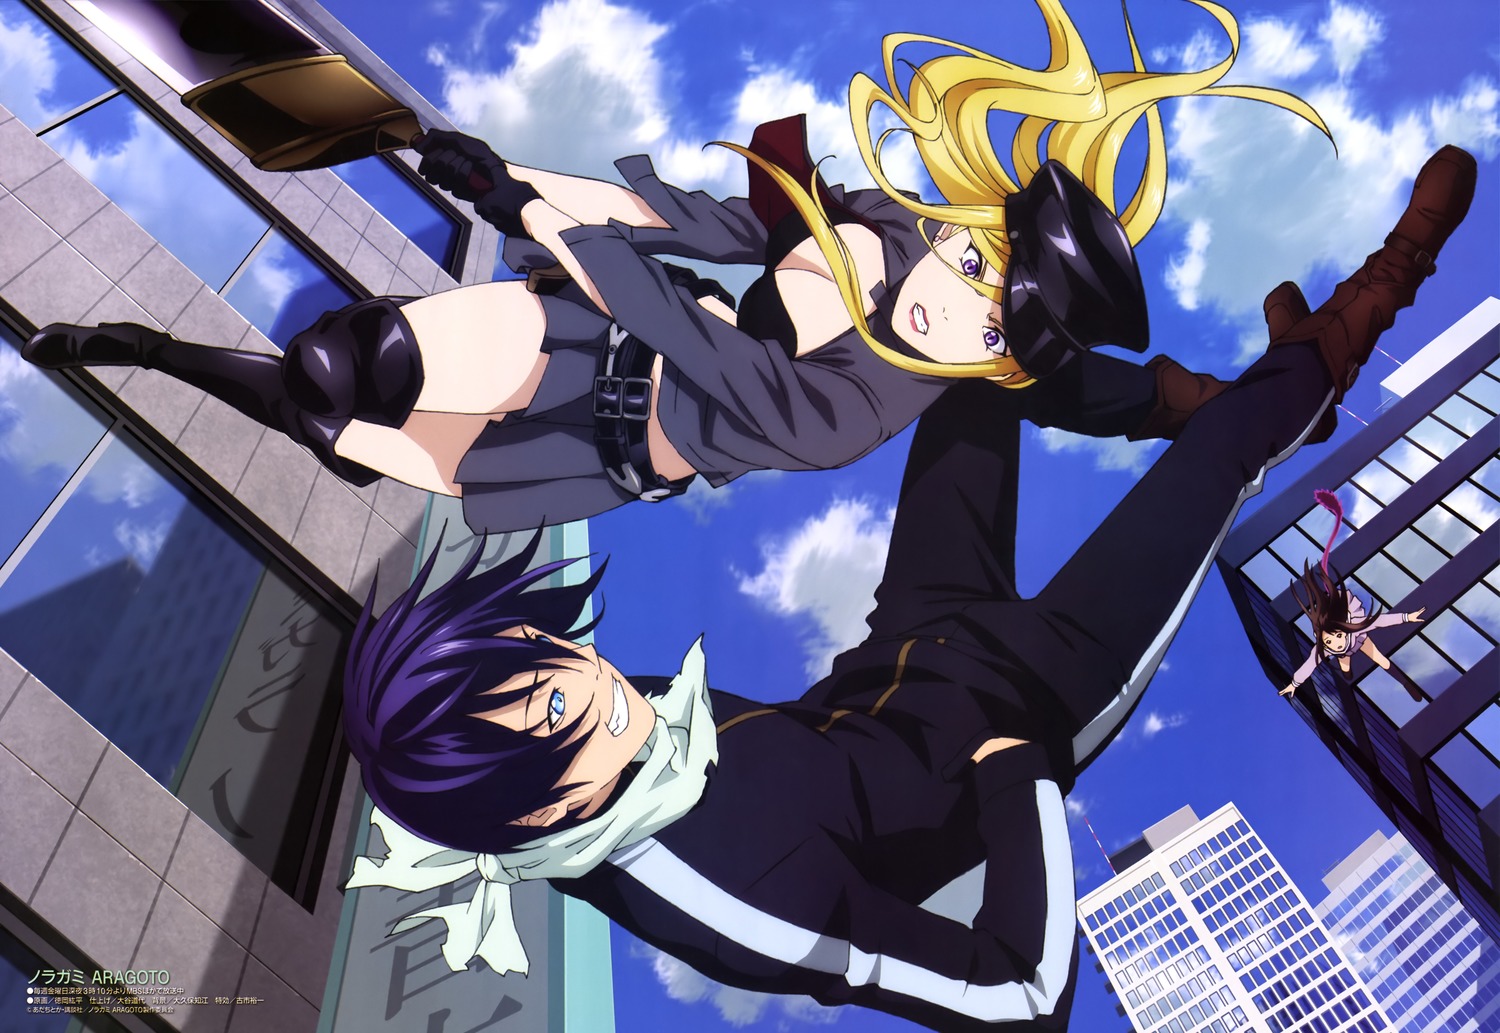 Episode 8 - Noragami Aragoto - Anime News Network